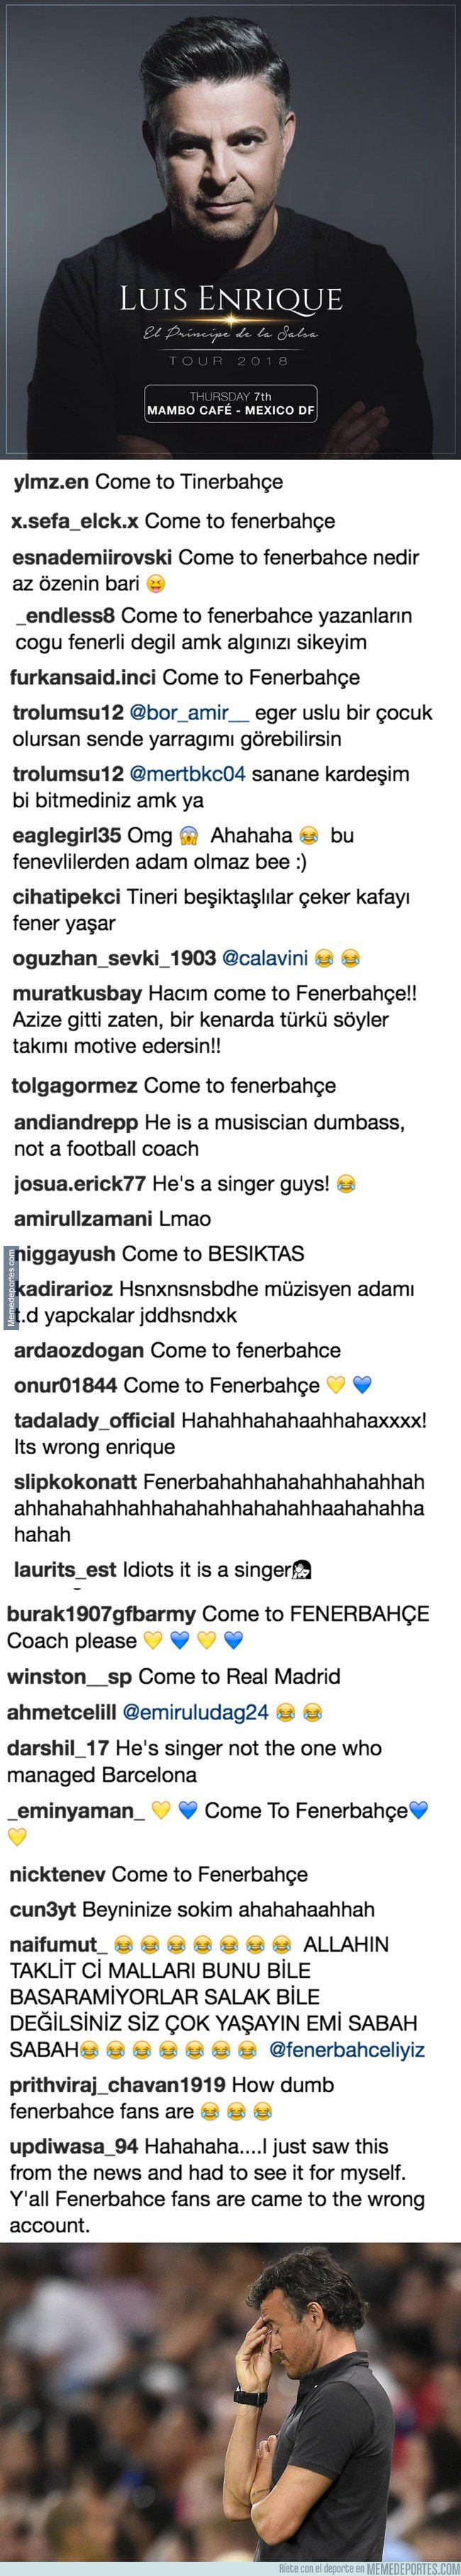 1036800 - Tras el rumor de Luis Enrique entrenando al Fenerbahçe, los fans turcos se equivocan de cuenta y se la lían a este otro Luis Enrique